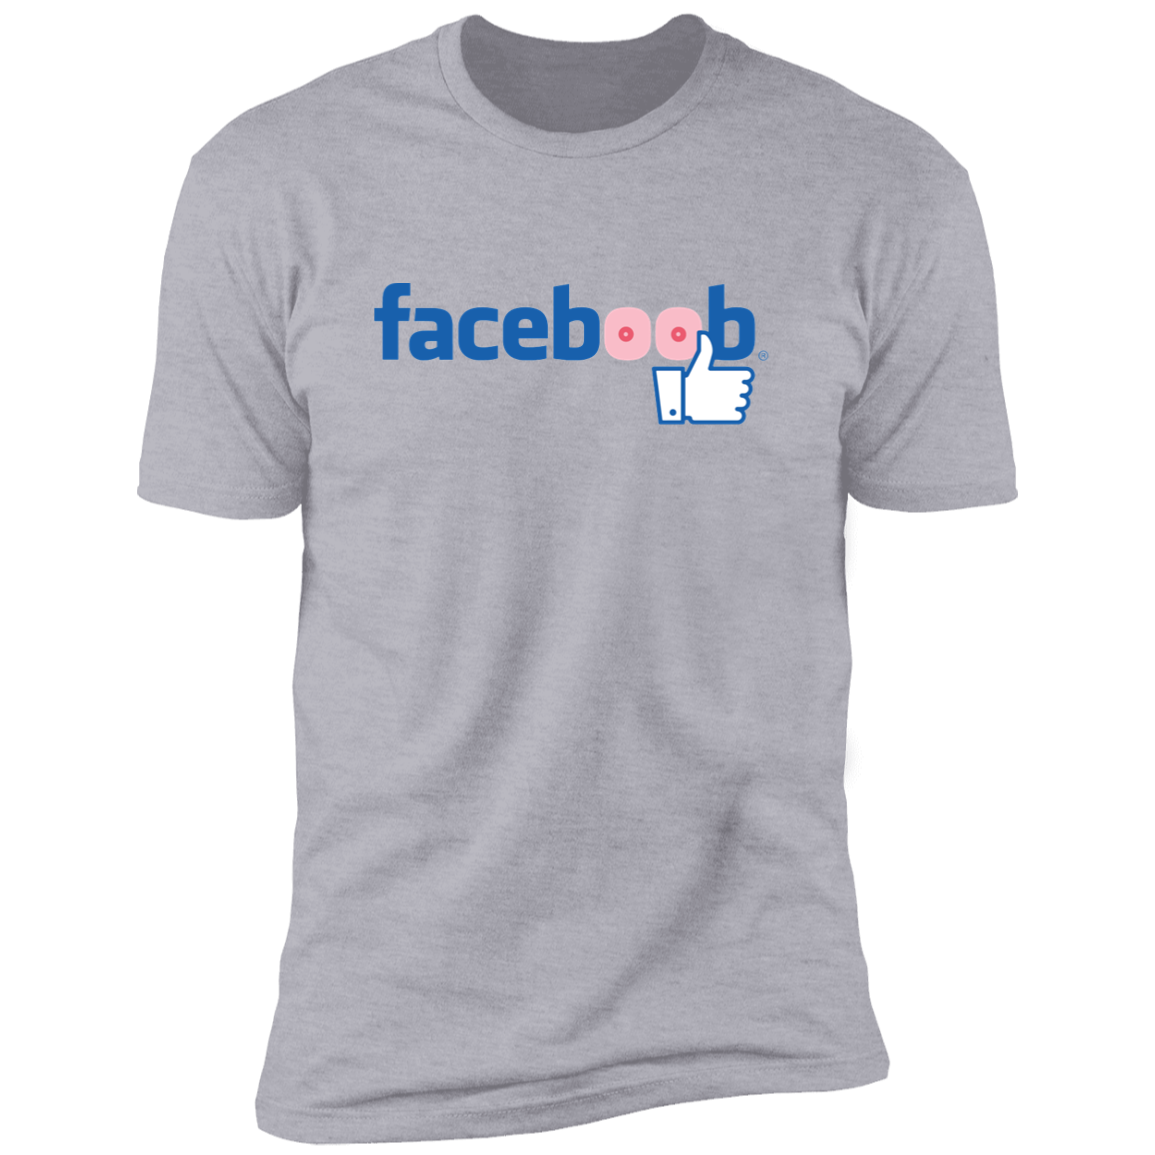 Faceboob - T-Shirt Light Grey / M